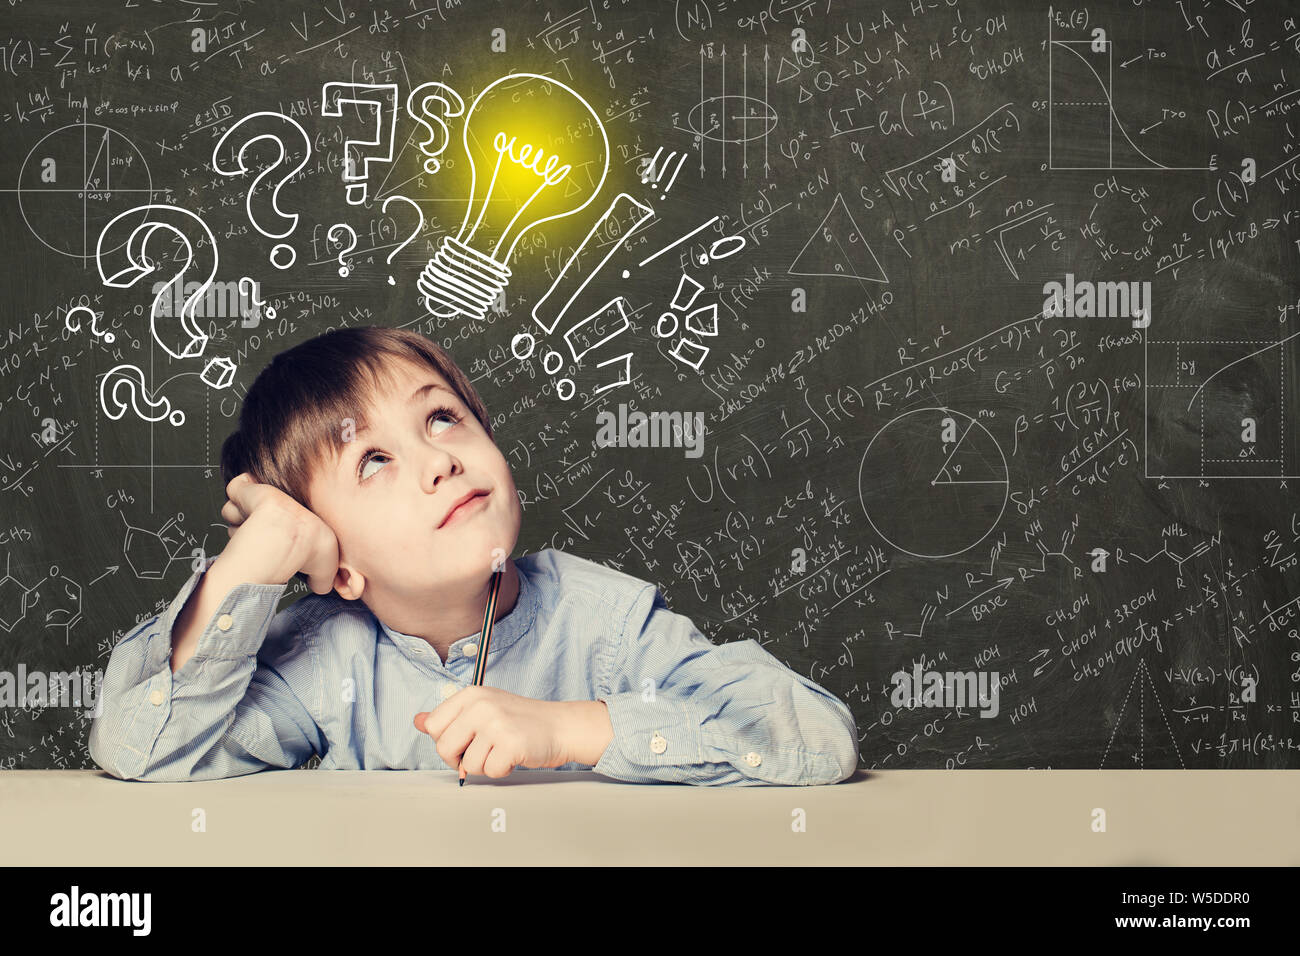 Idee! Smart kid Student mit Glühbirne auf der Tafel Stockfoto